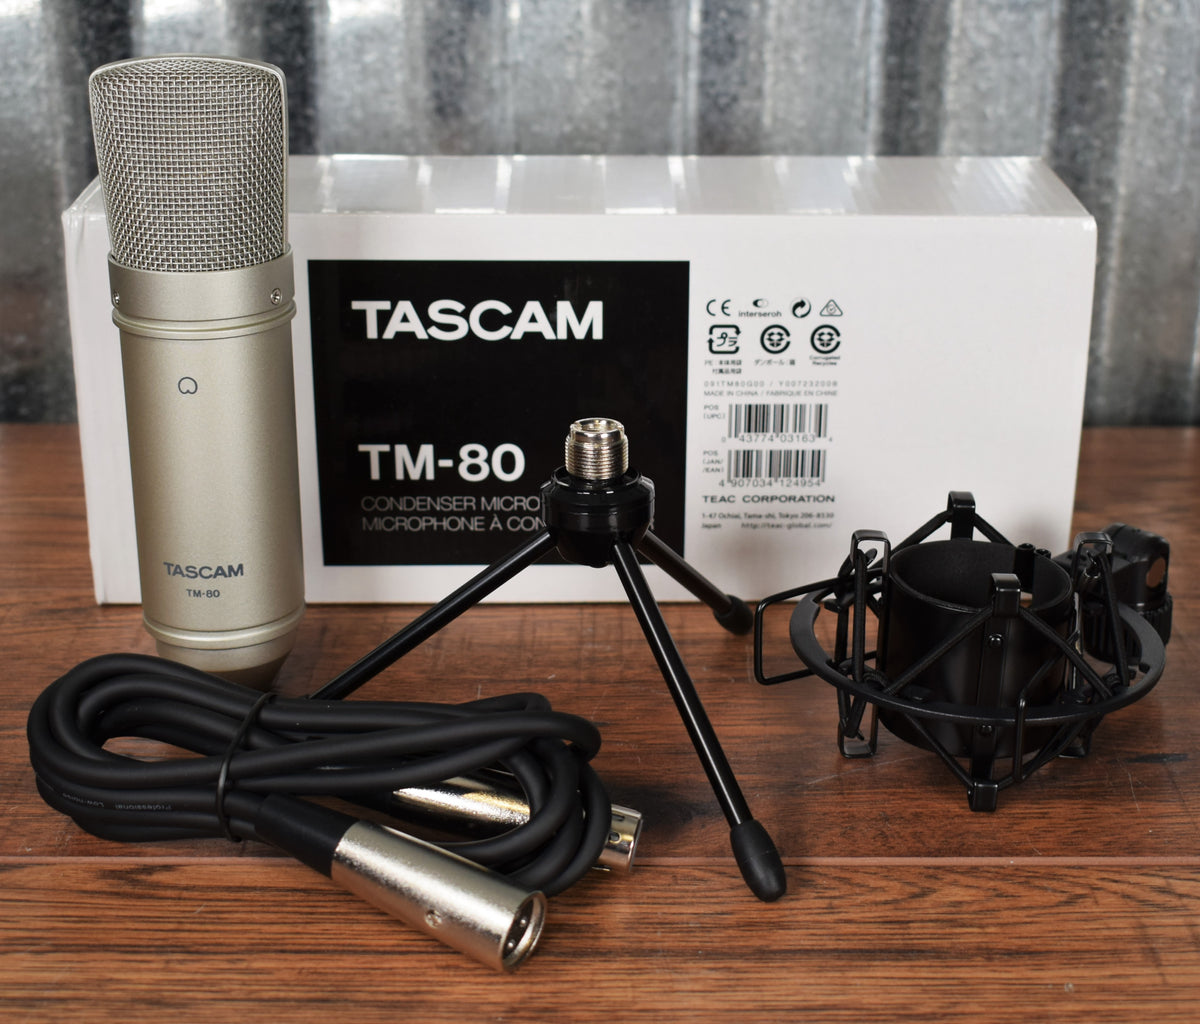 TM-80, Tascam